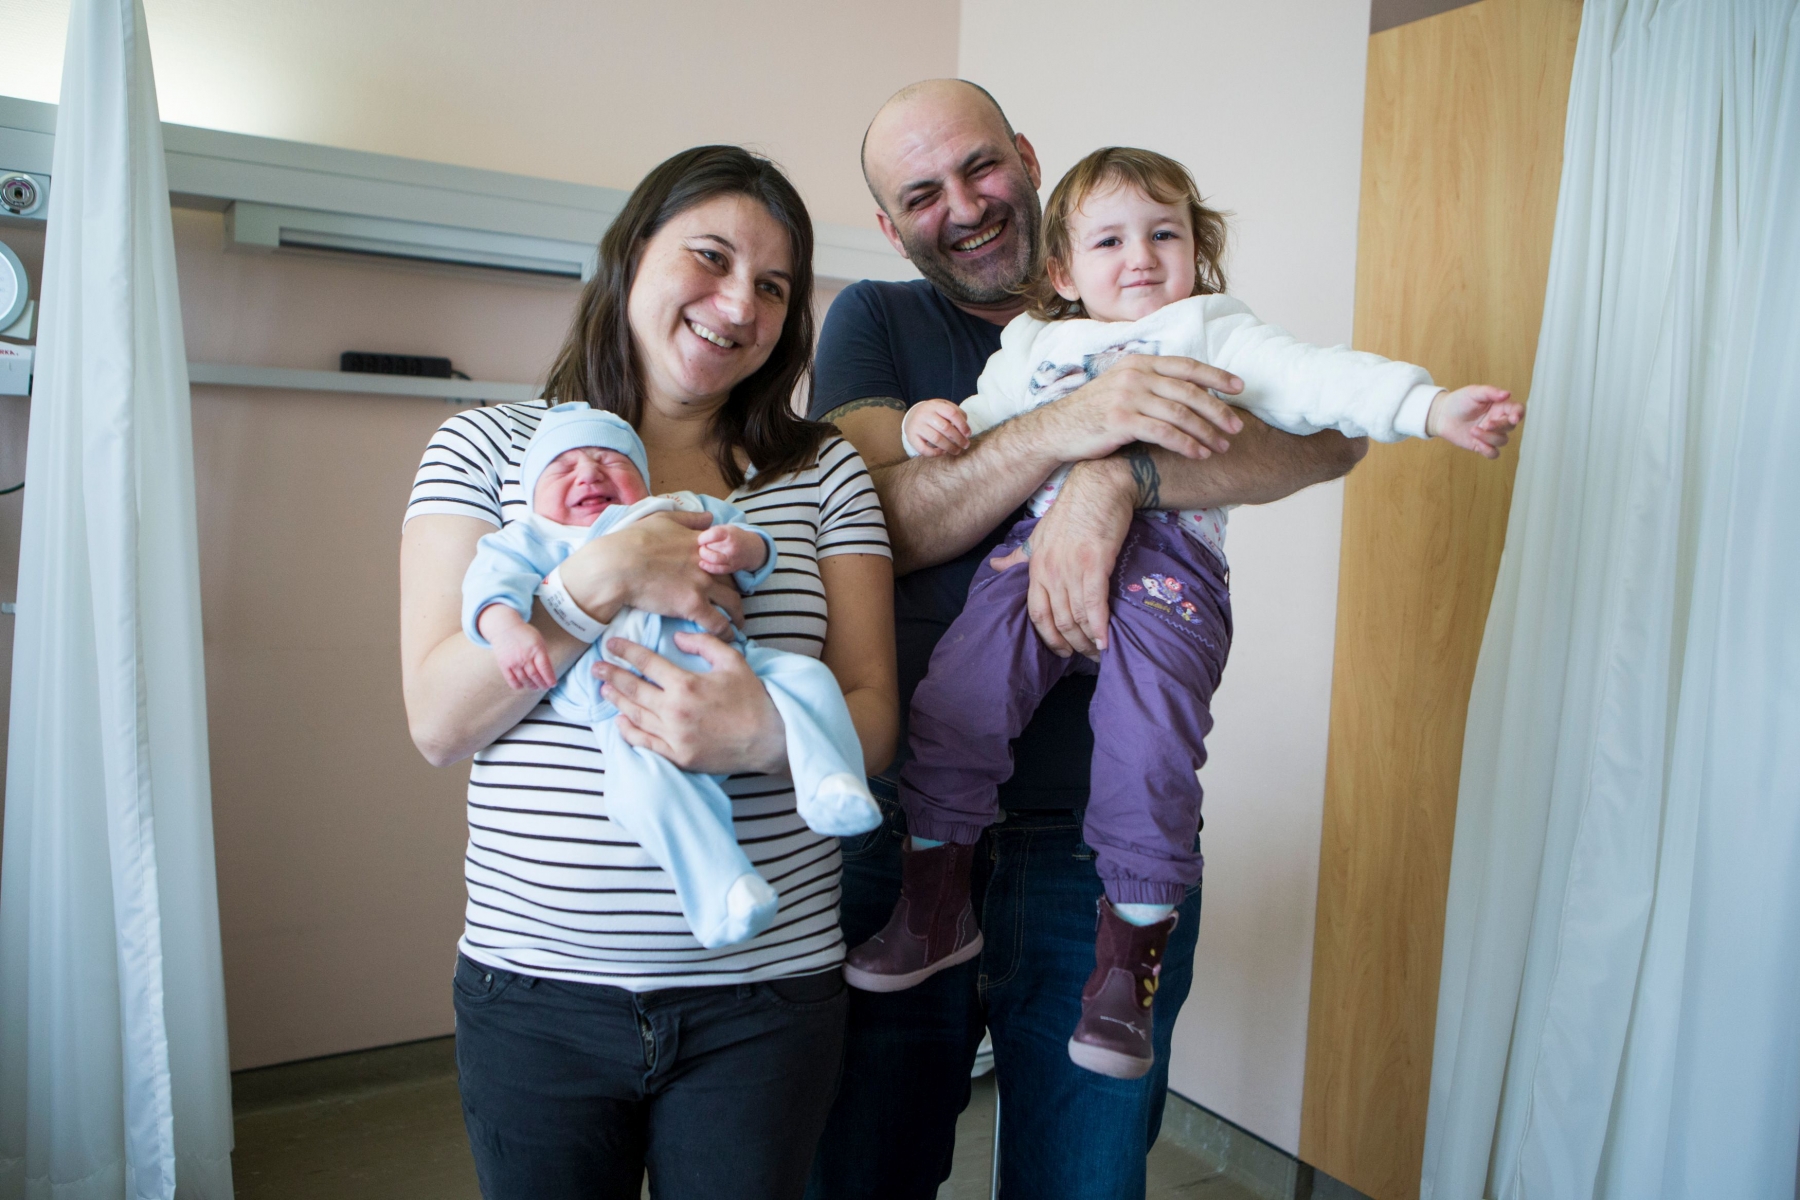 La famille Ozcan au complet. De g. à dr. Nalan, la maman, avec le petit Elias dans ses bras. Ela Maelys, la grande de 20 mois,  est ravie d'être portée par son papa, Mustafa.